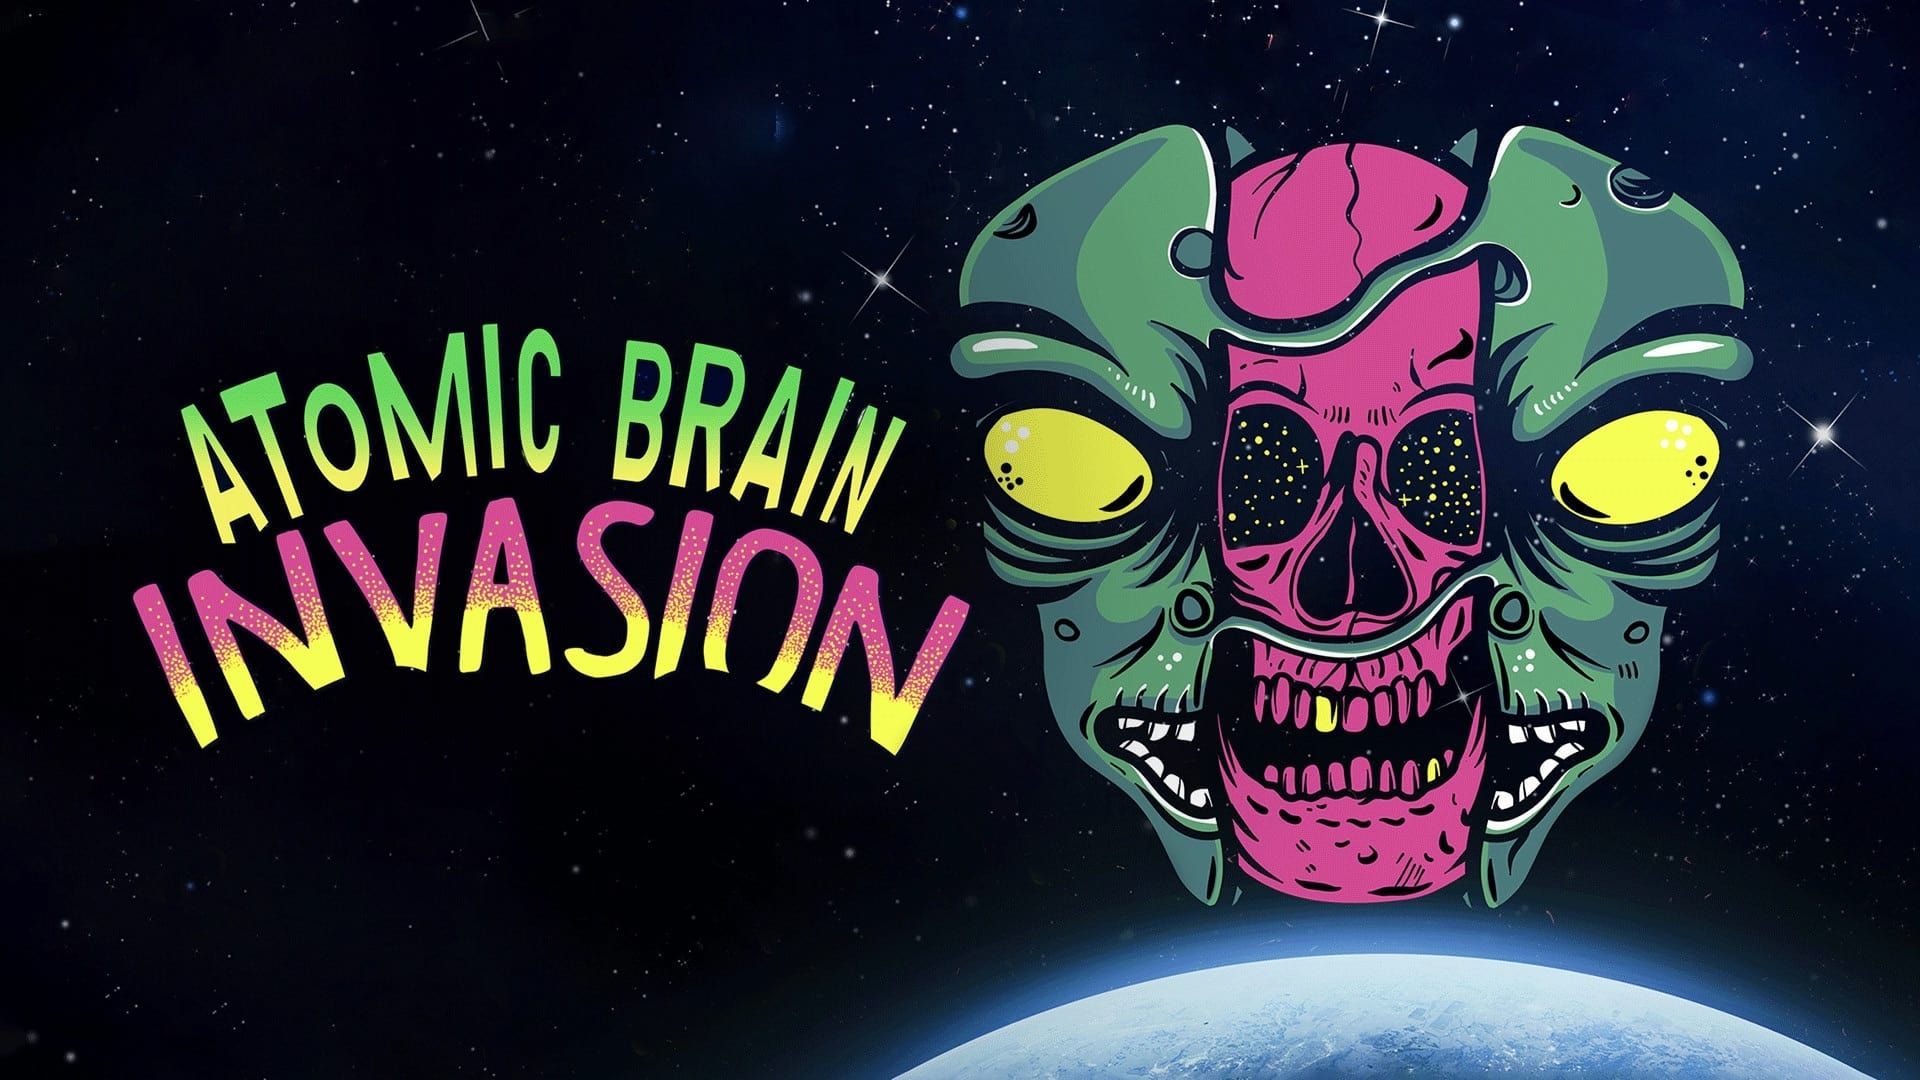 Atomic Brain Invasion background